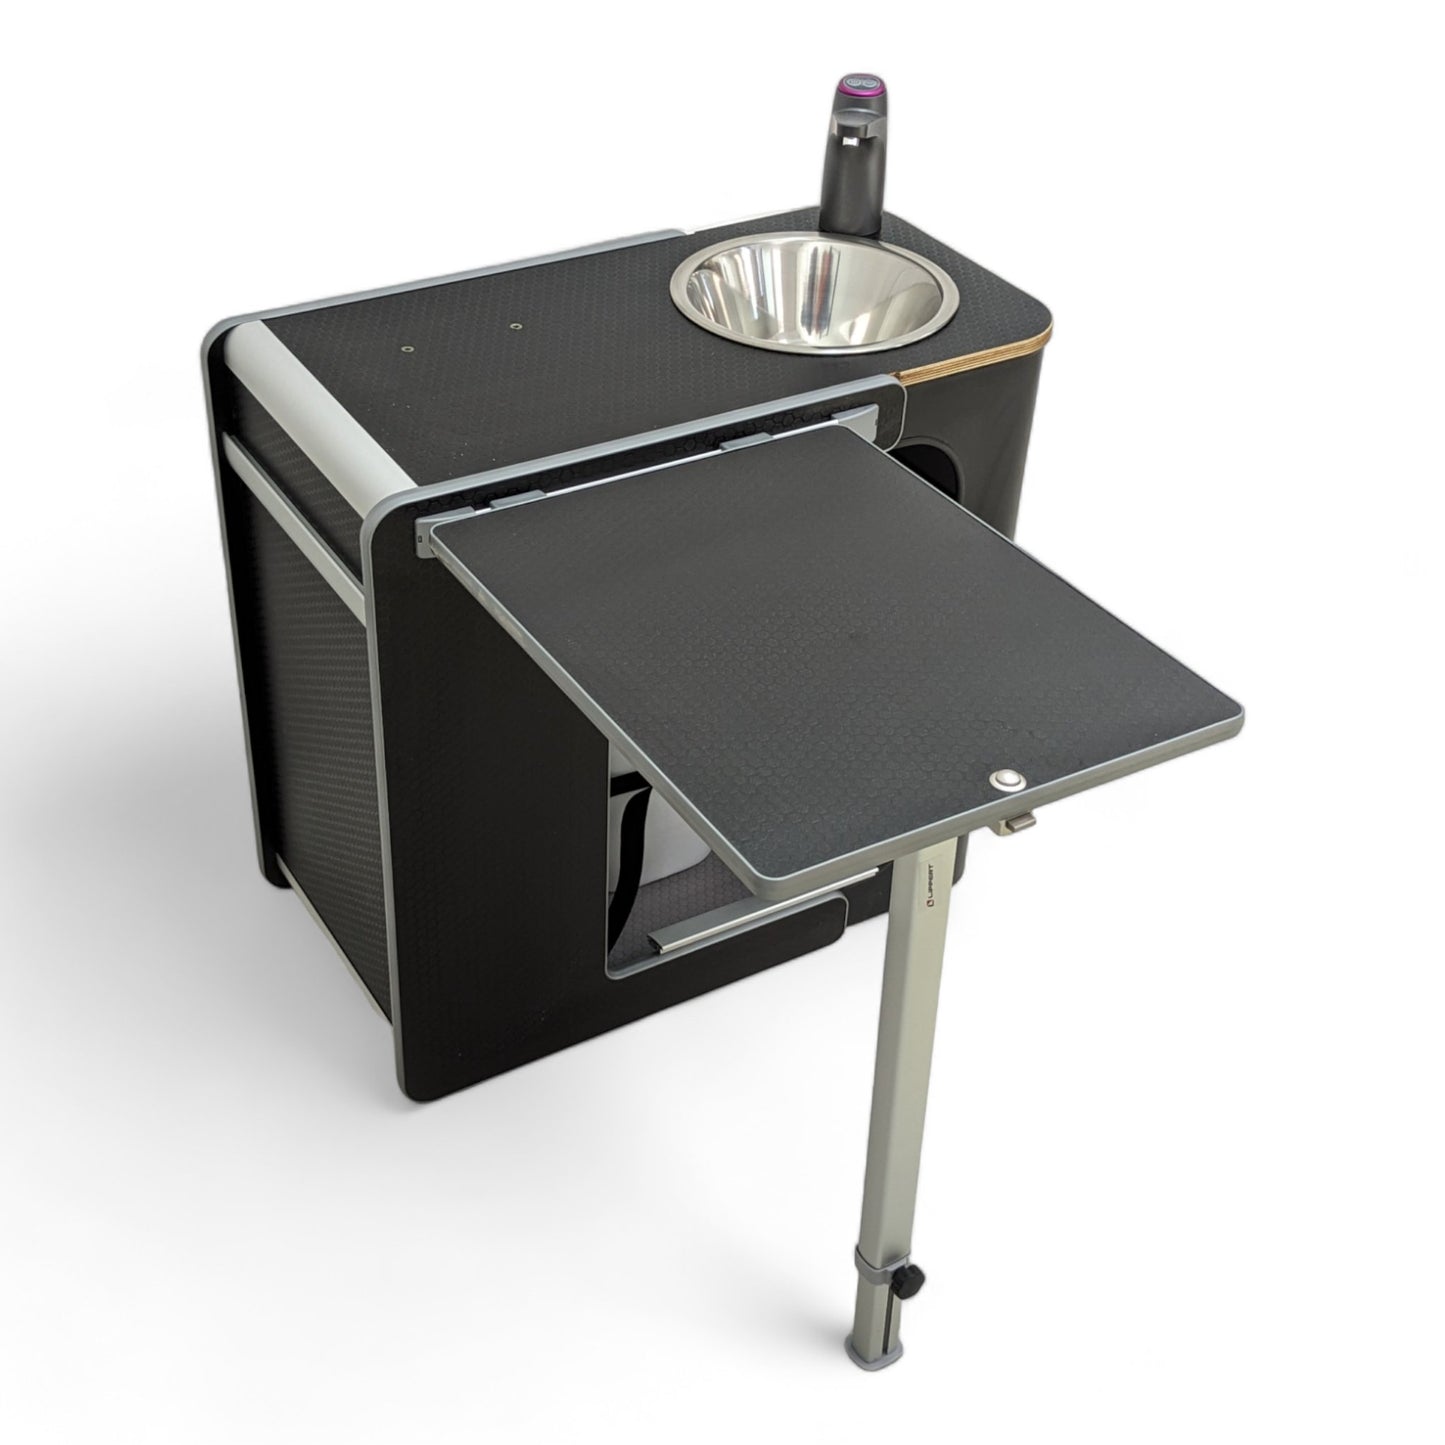 Vangear Hybrid-Sink Campervan Kitchen (Black) - Vangear UK